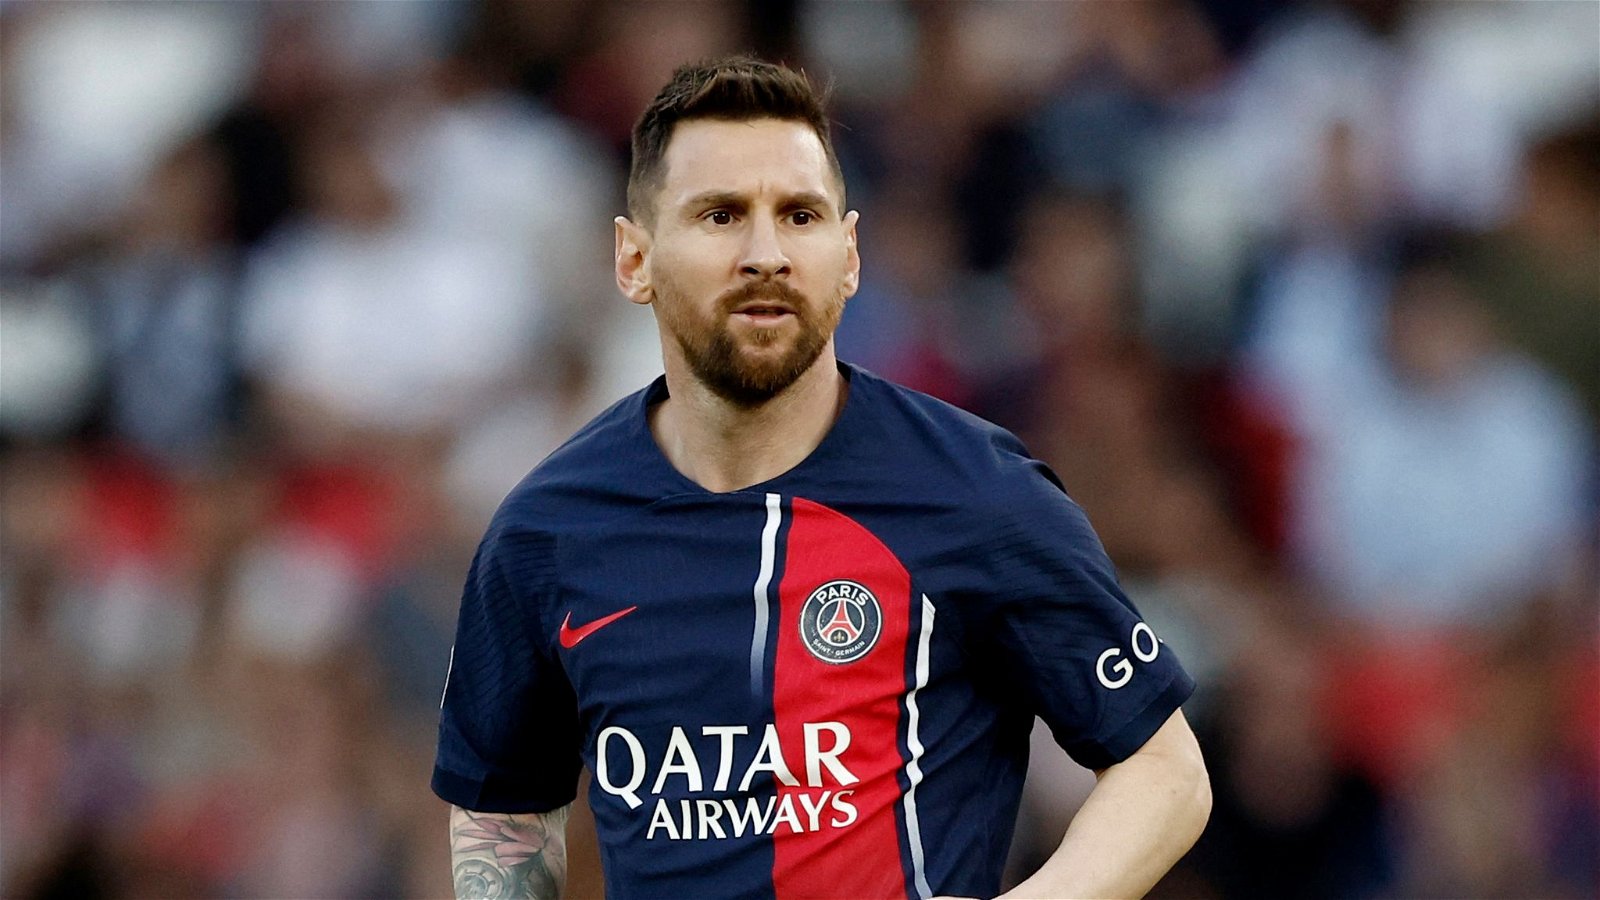 Lionel Messi - PSG